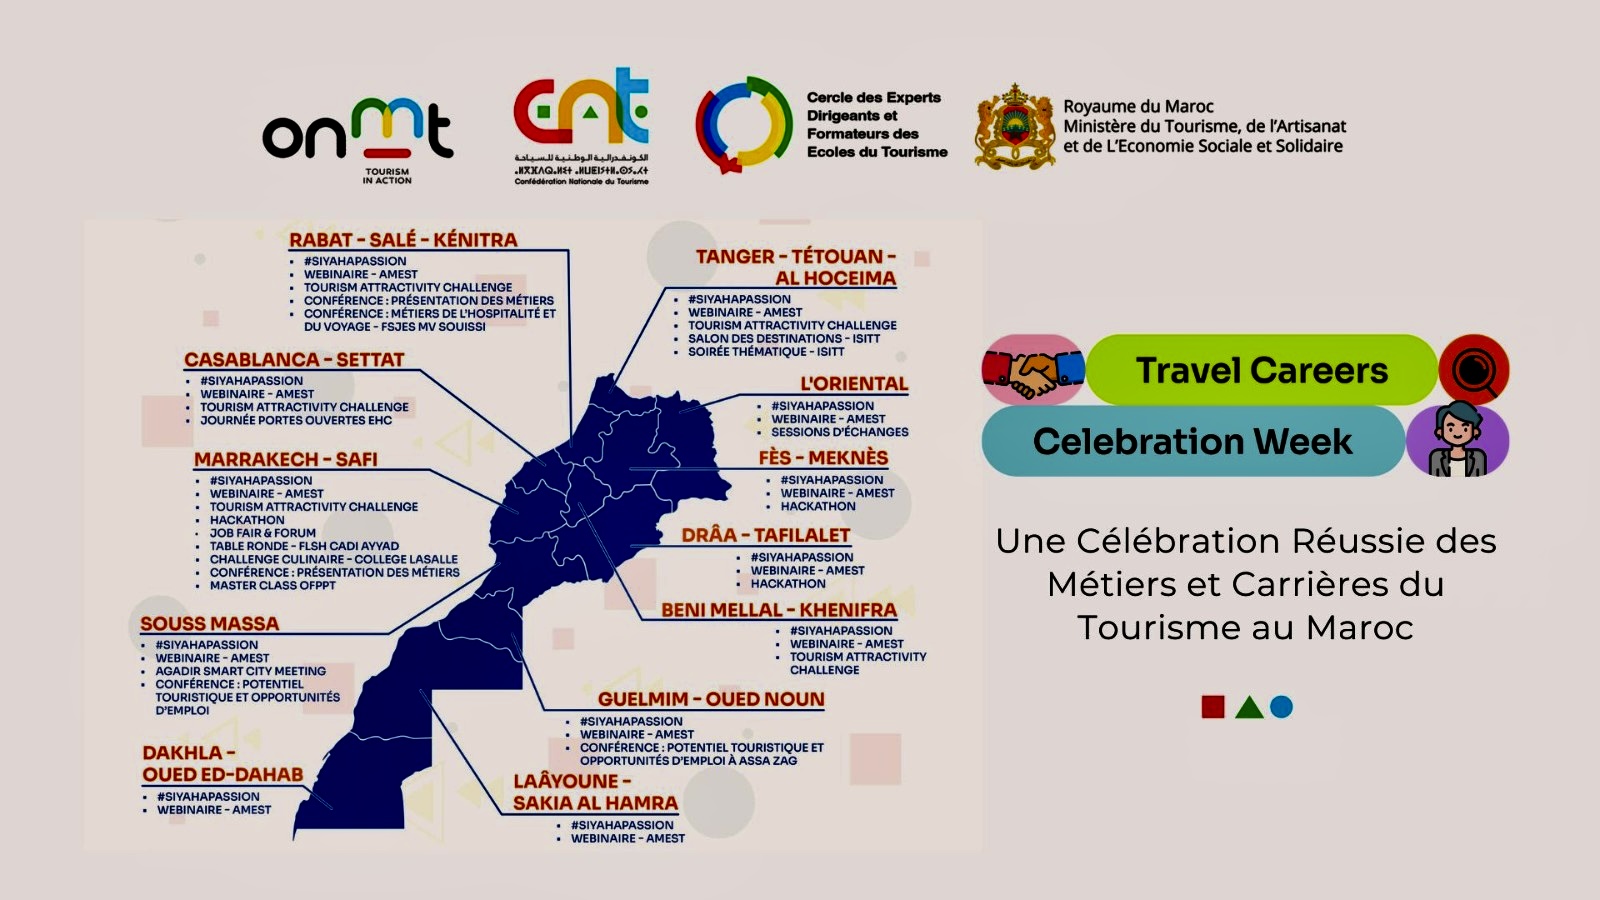 La Travel Careers Celebration Week met l’attractivité du Maroc sous les projecteurs 